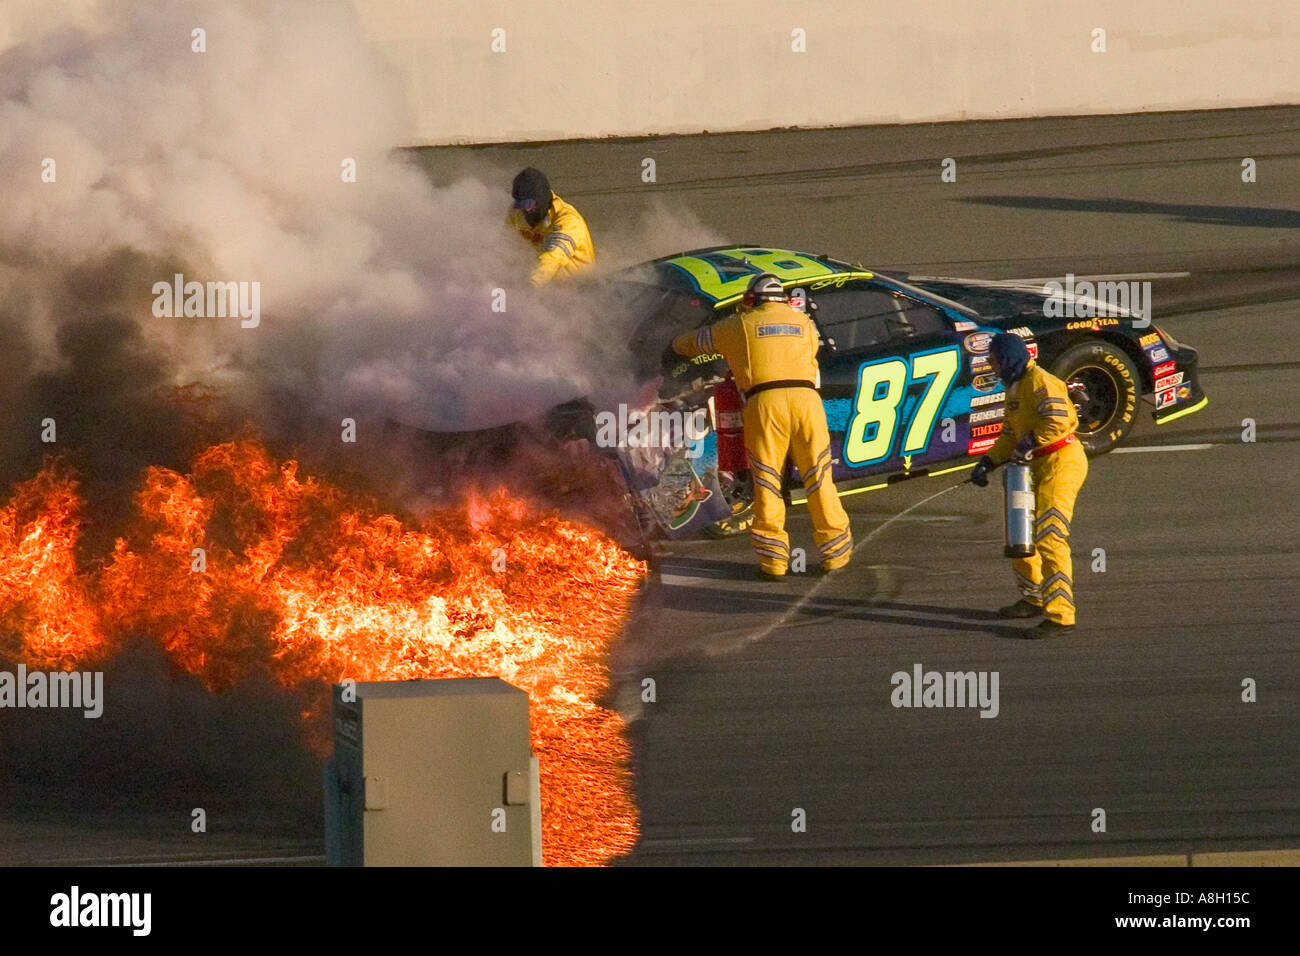 L'équipage d'urgence lutte contre l'incendie lors de crash en course de NASCAR au Kentucky Speedway Banque D'Images